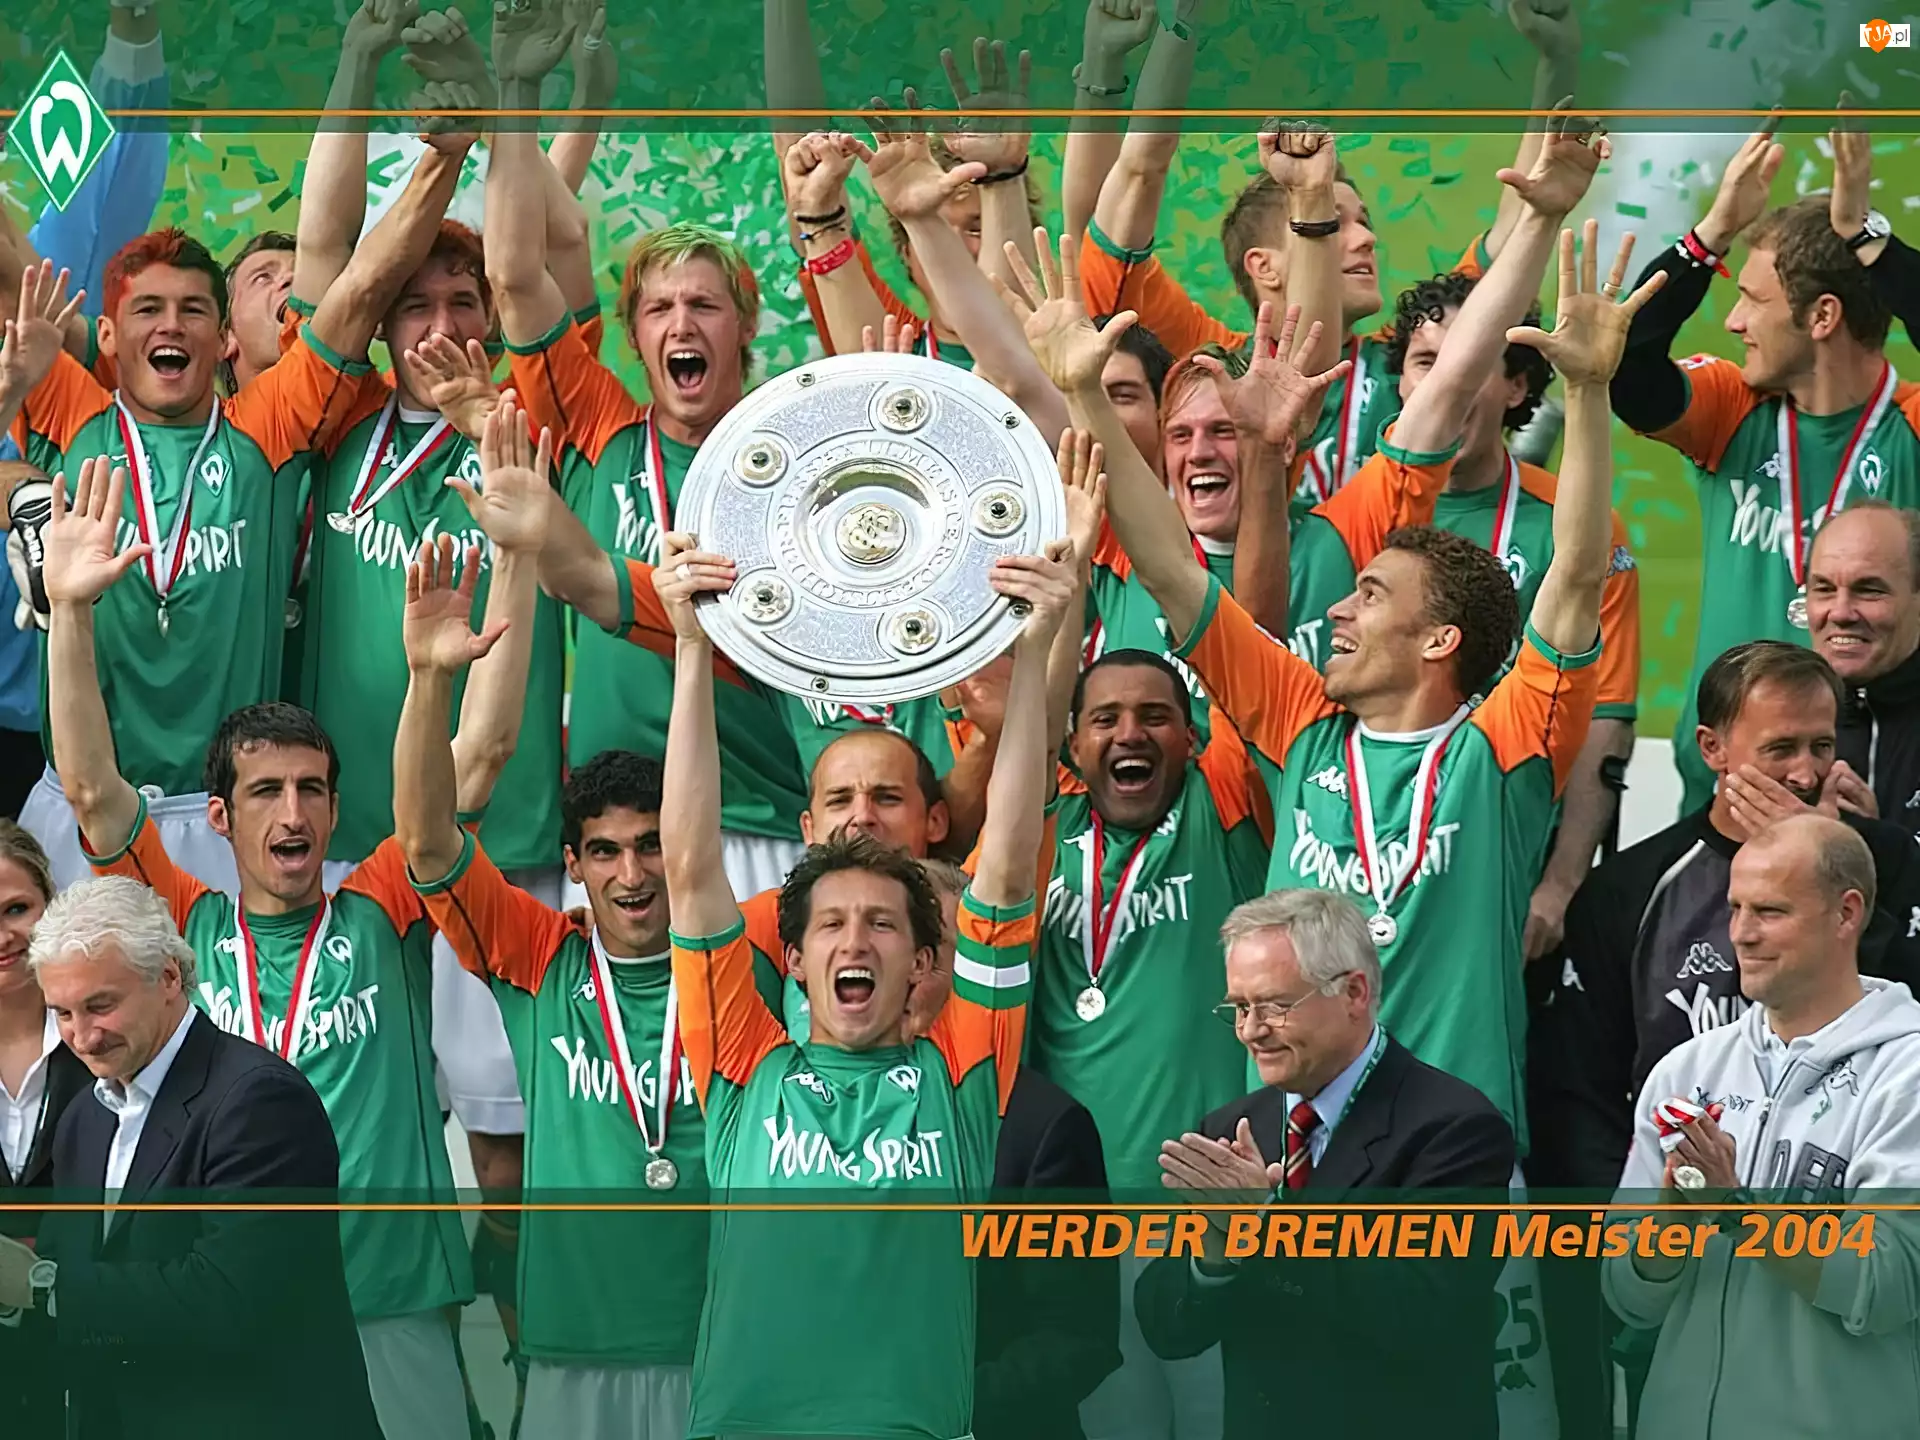 Piłka nożna, Werder Bremen